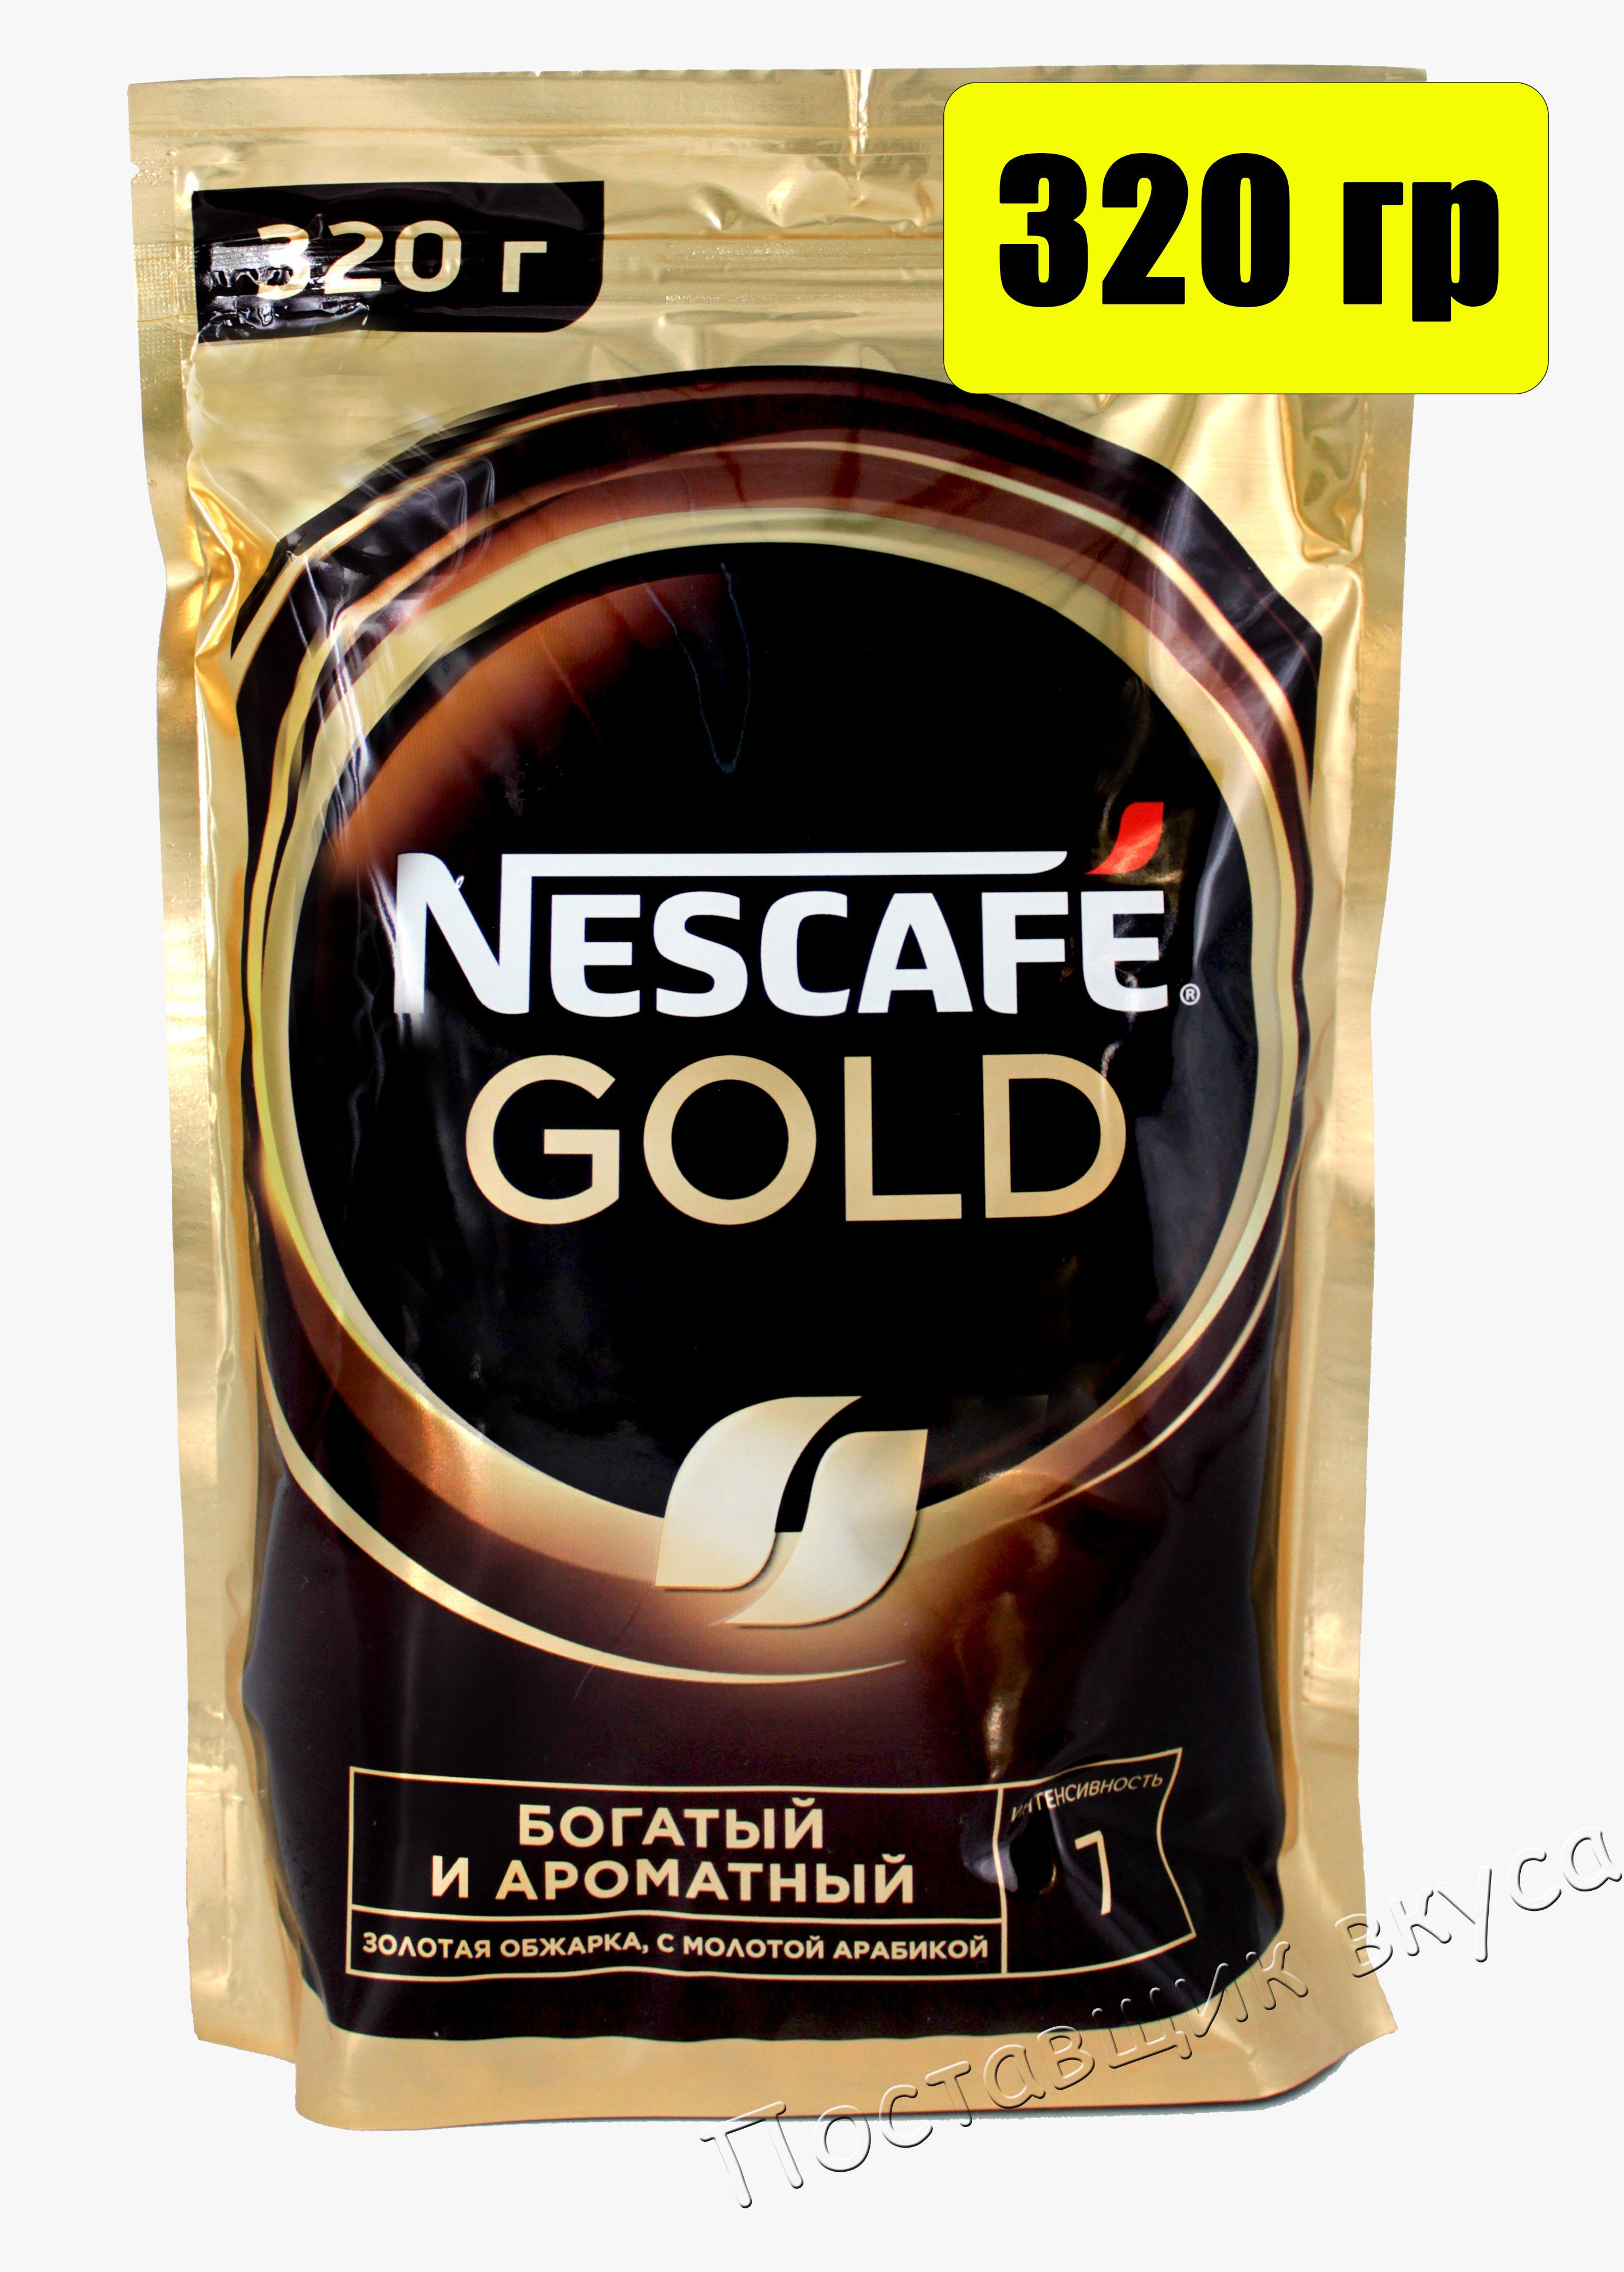 Кофе нескафе голд 320. Nescafe Gold 320 гр. Нескафе Голд пакет 320г. Кофе Нескафе Голд 320 грамм. Кофе растворимый Nescafe Gold 320г.